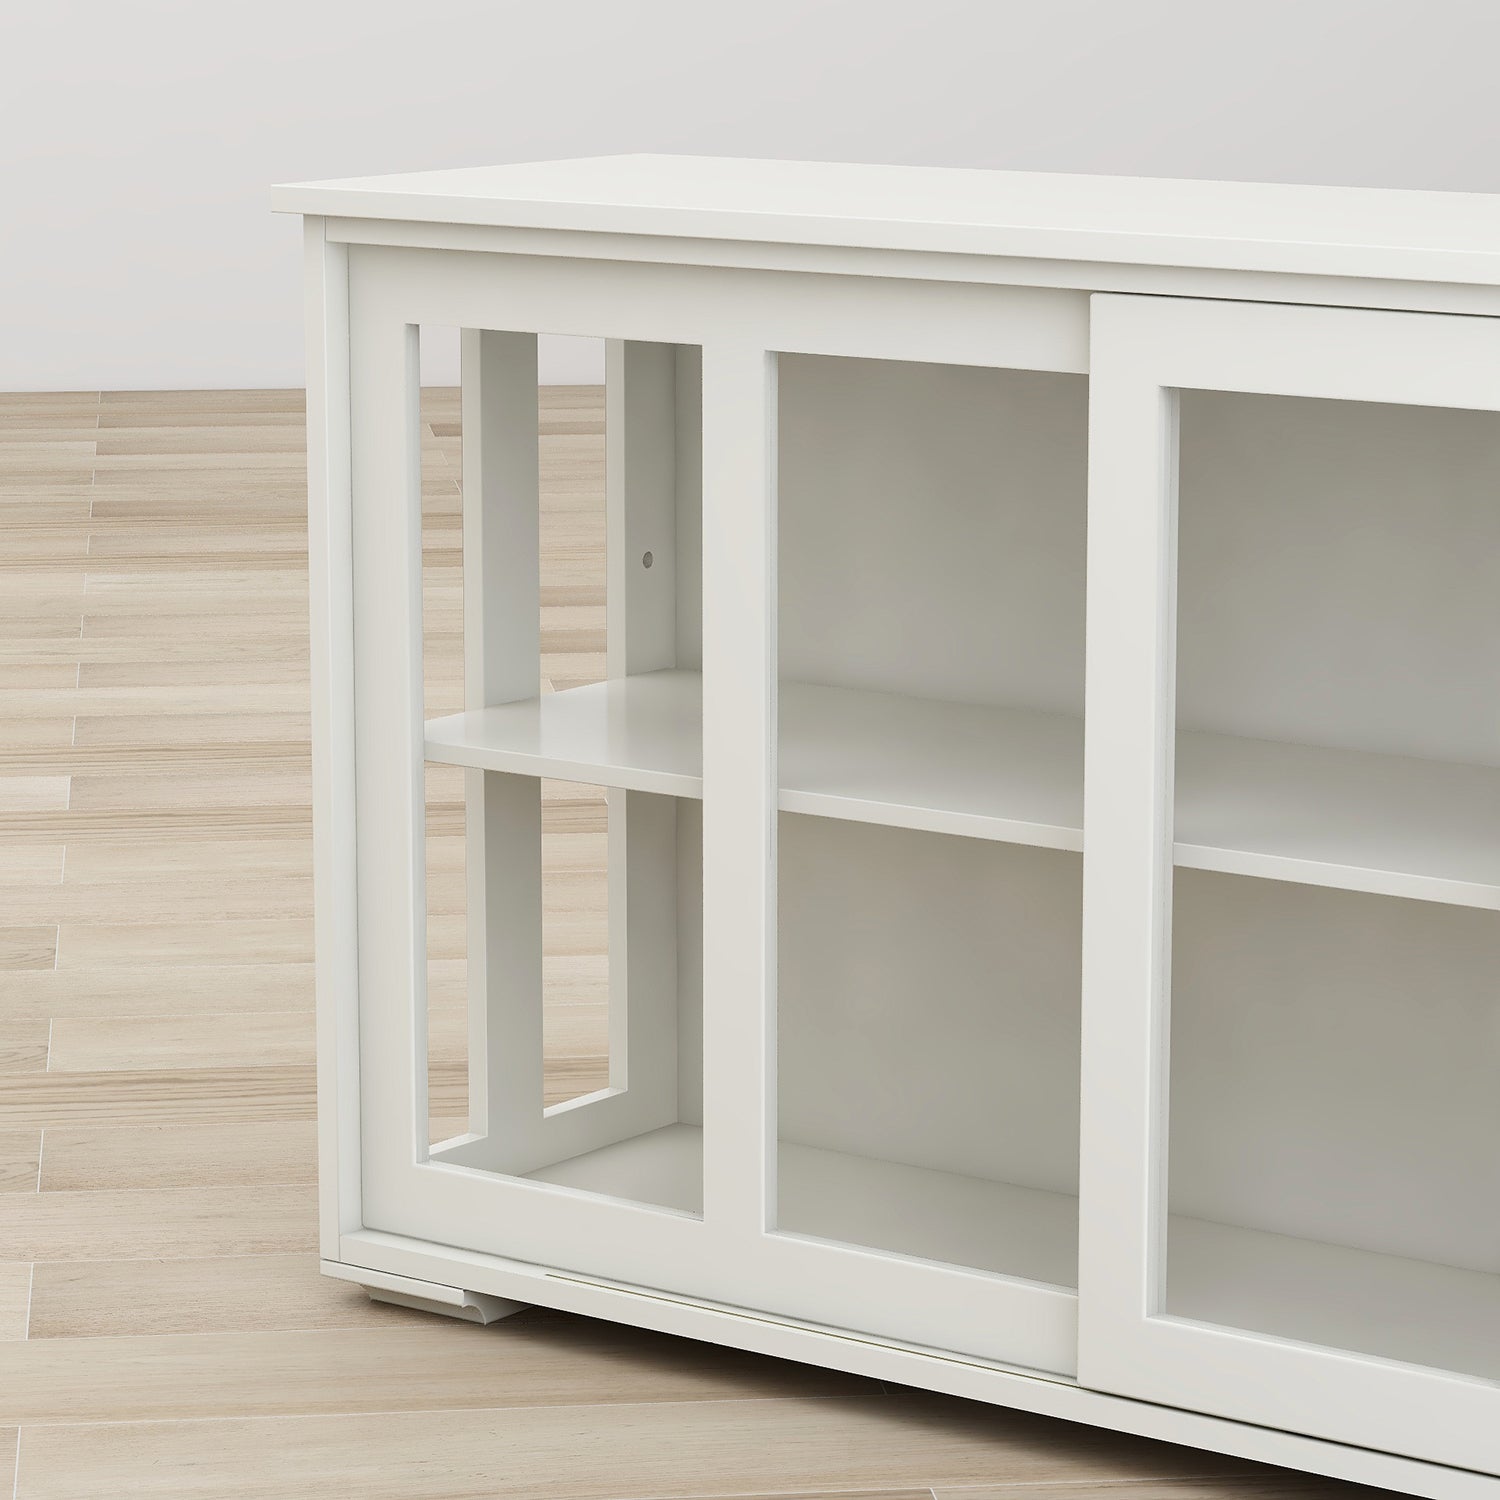 Kitchen Storage Stand Cupboard With Glass Door White white-mdf